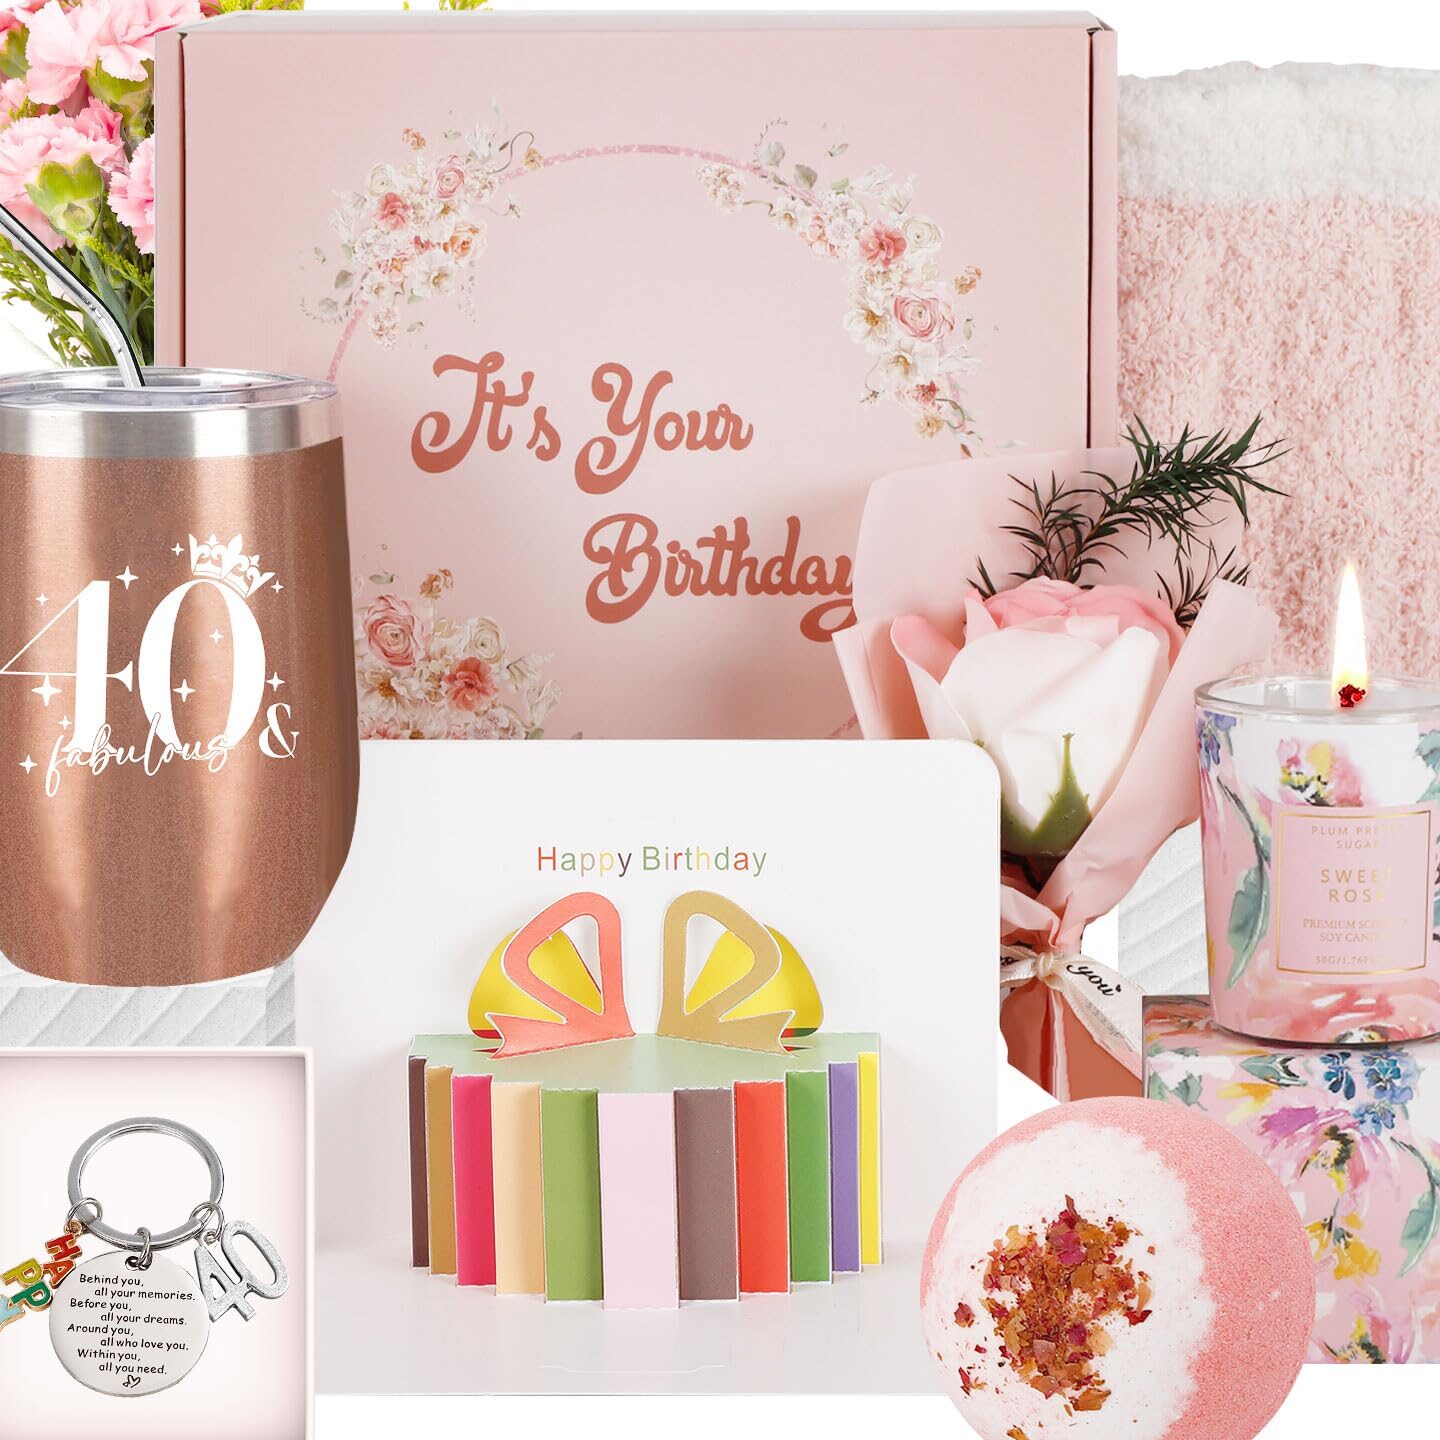 Resogenix Regalos de 40 cumpleaños para mujer, caja de regalo con cesta de mimos de feliz 40 cumpleaños para ella, regalos de cumpleaños personalizados de 40 años para hermana mamá...